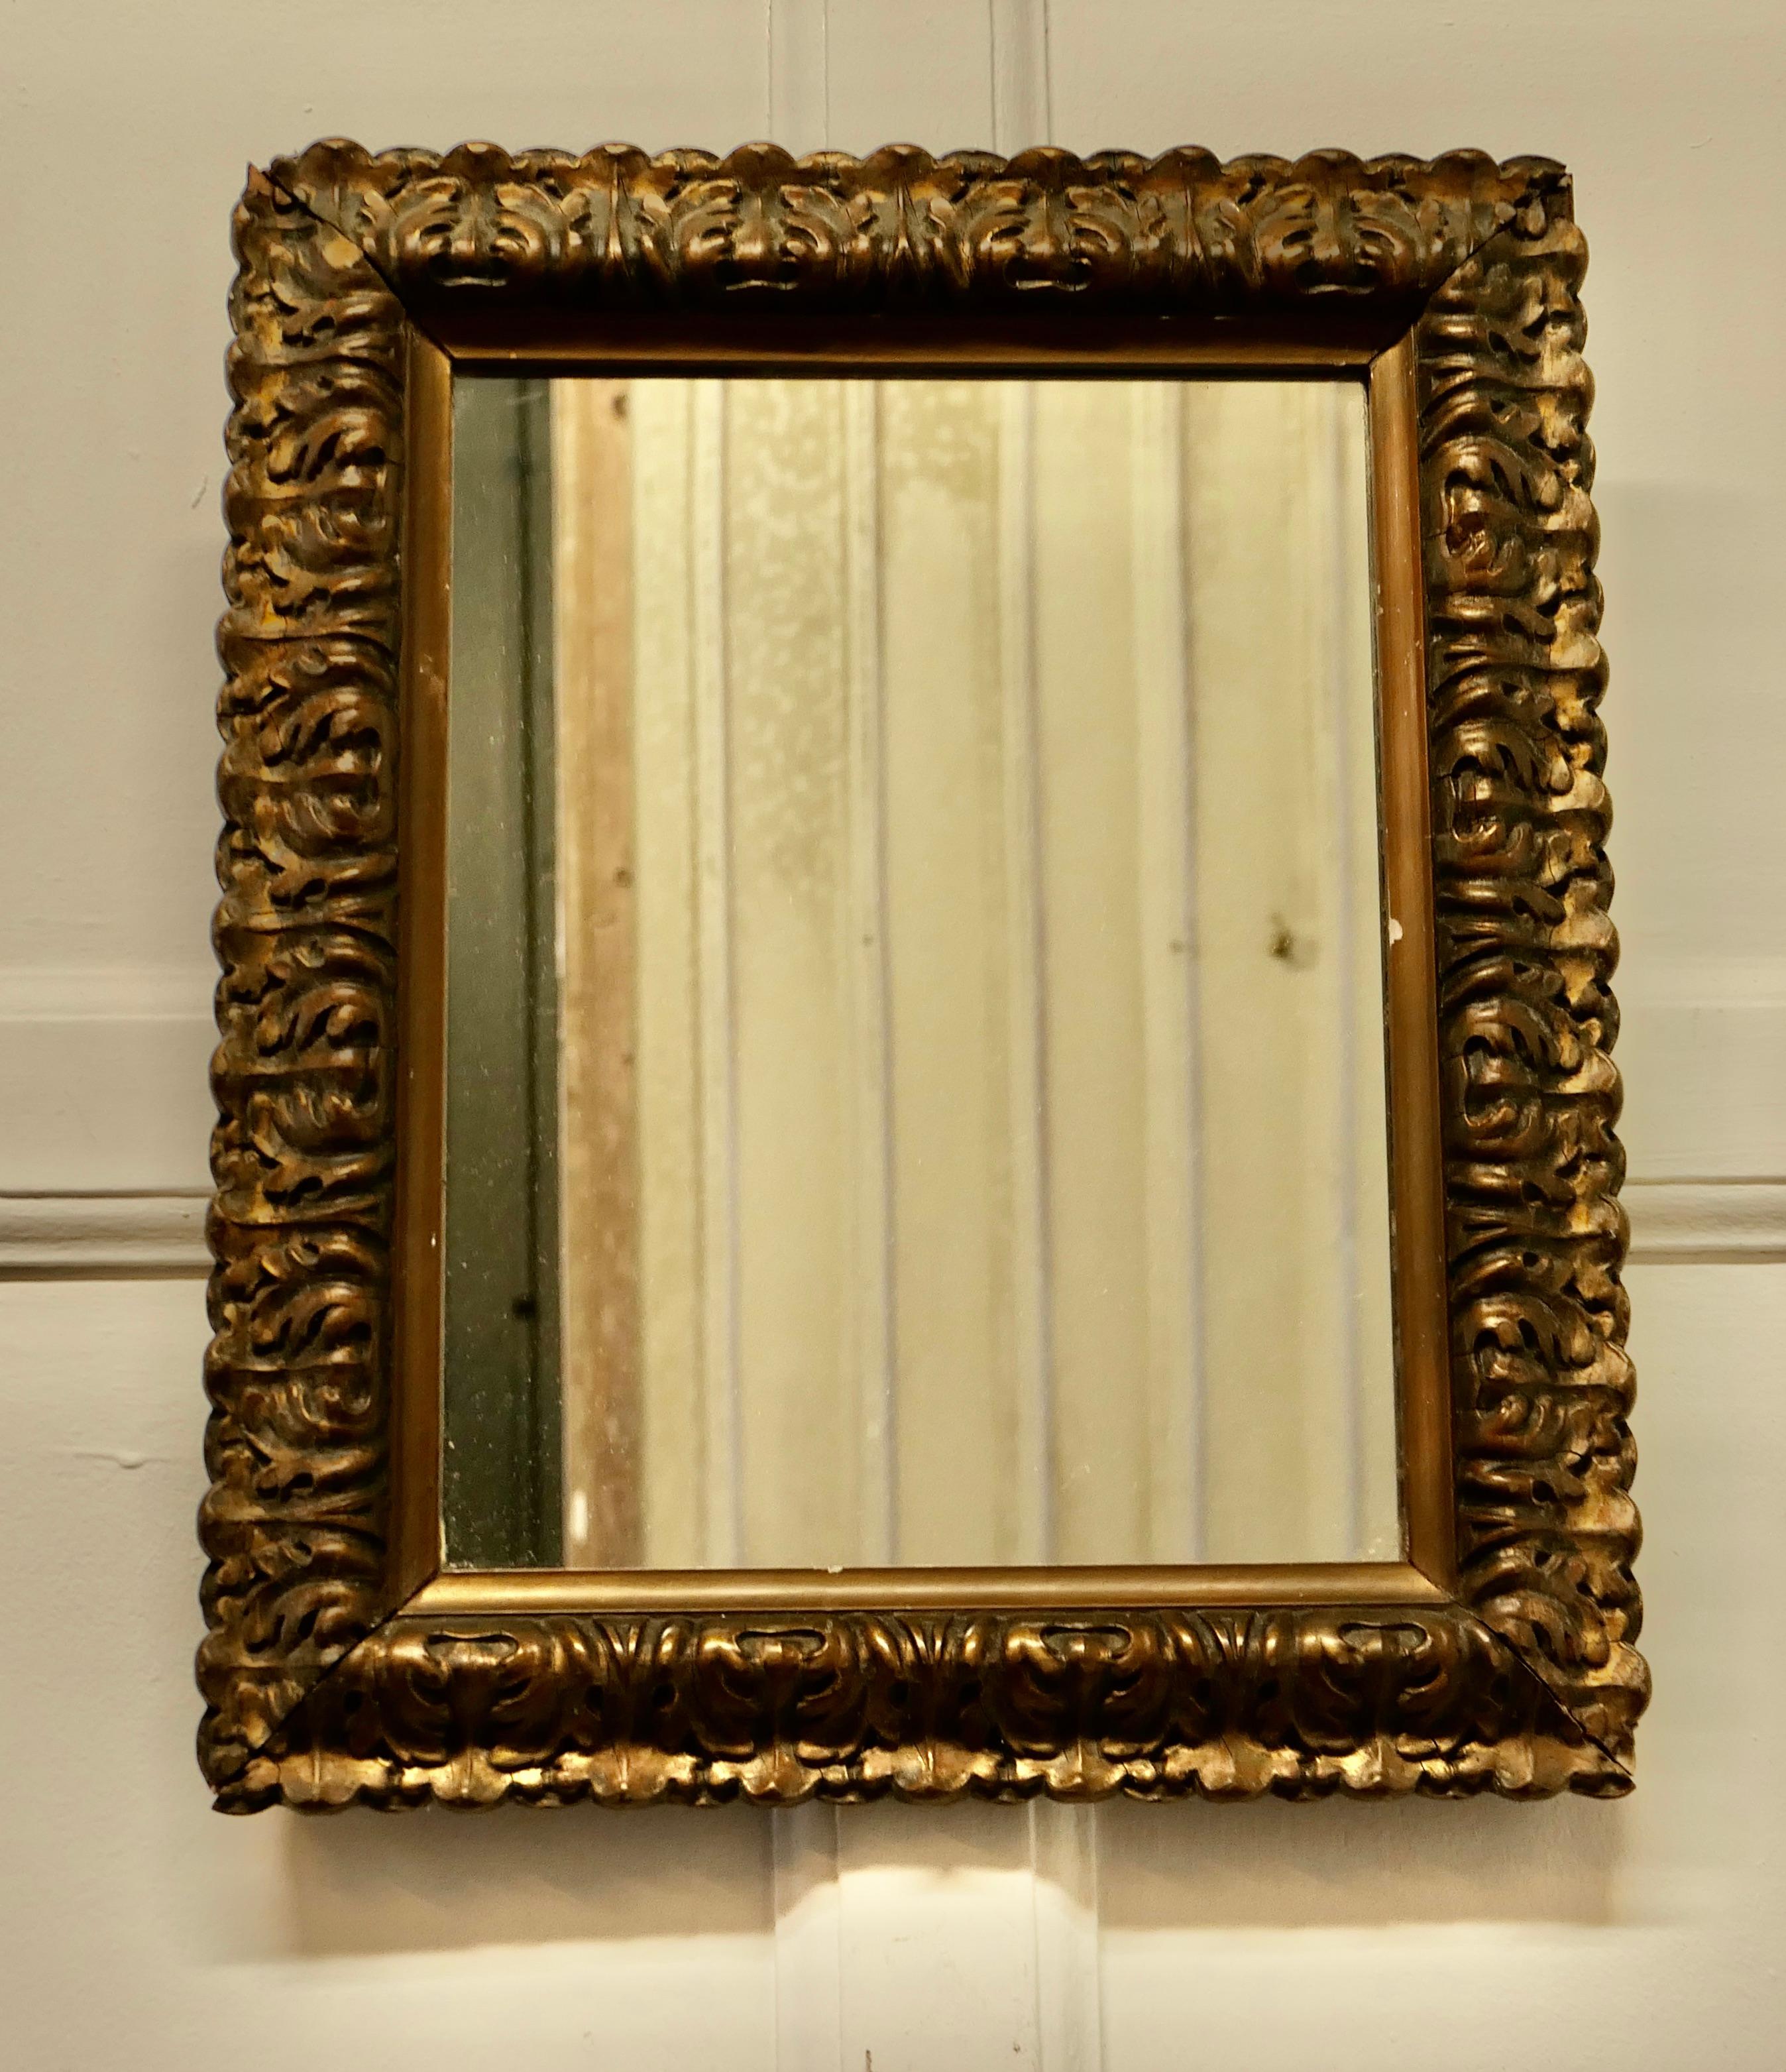 Magnifique miroir mural doré du 19ème siècle

Il s'agit d'un beau miroir ancien, placé dans un cadre doré décoratif profondément moulé de 2,5 pouces, 
La glace est en bon état, le cadre est très attrayant avec des moulures profondes et présente